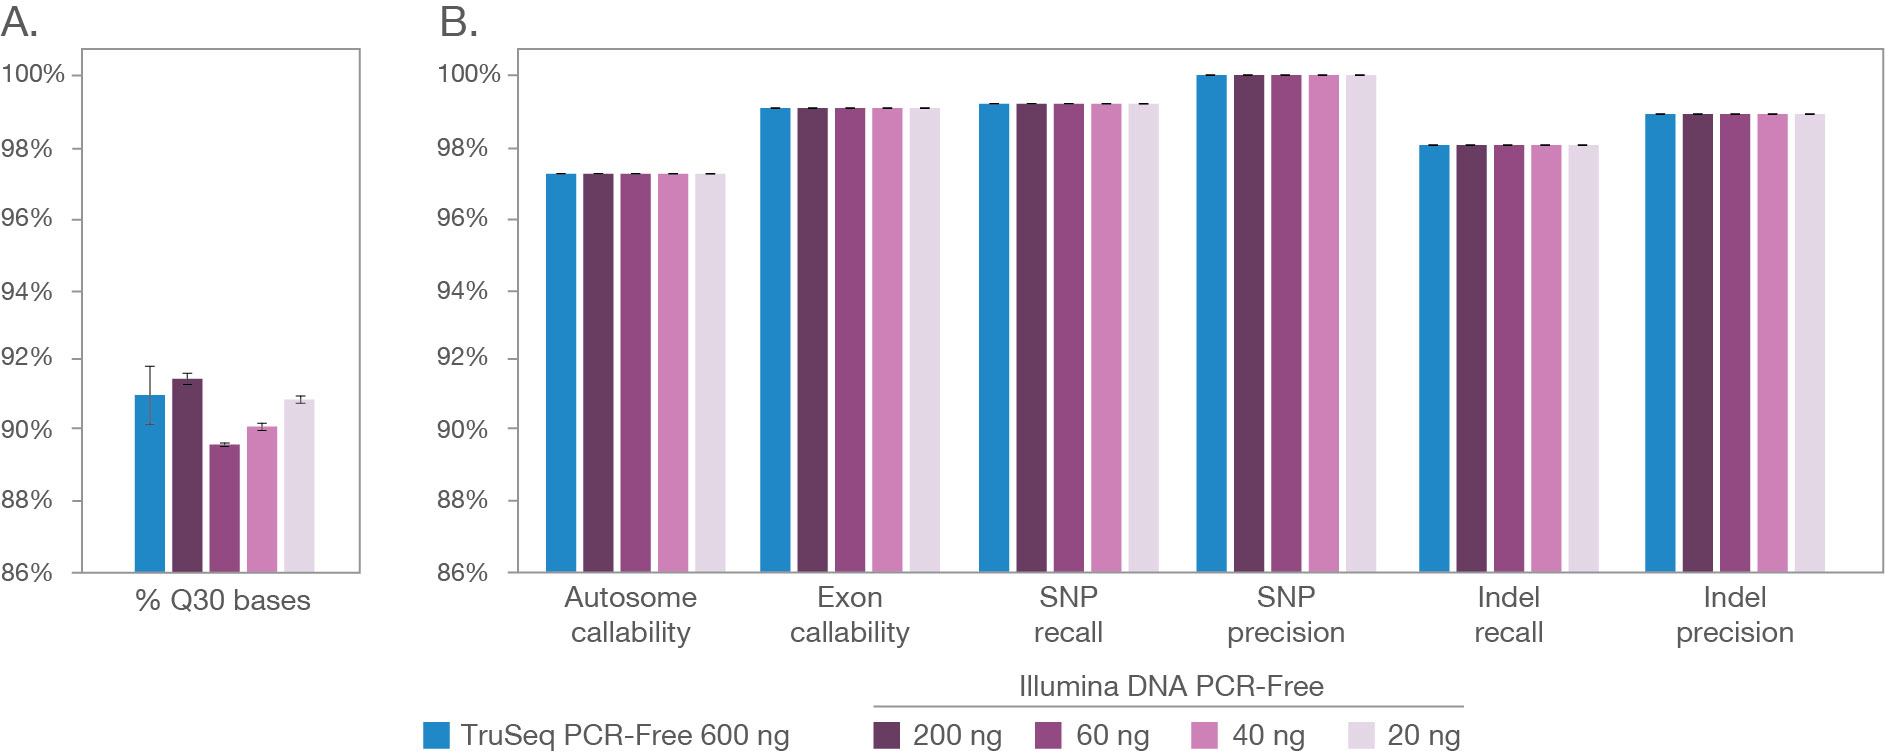 広範なDNAインプット量をカバーするIllumina DNA PCR-Freeの性能